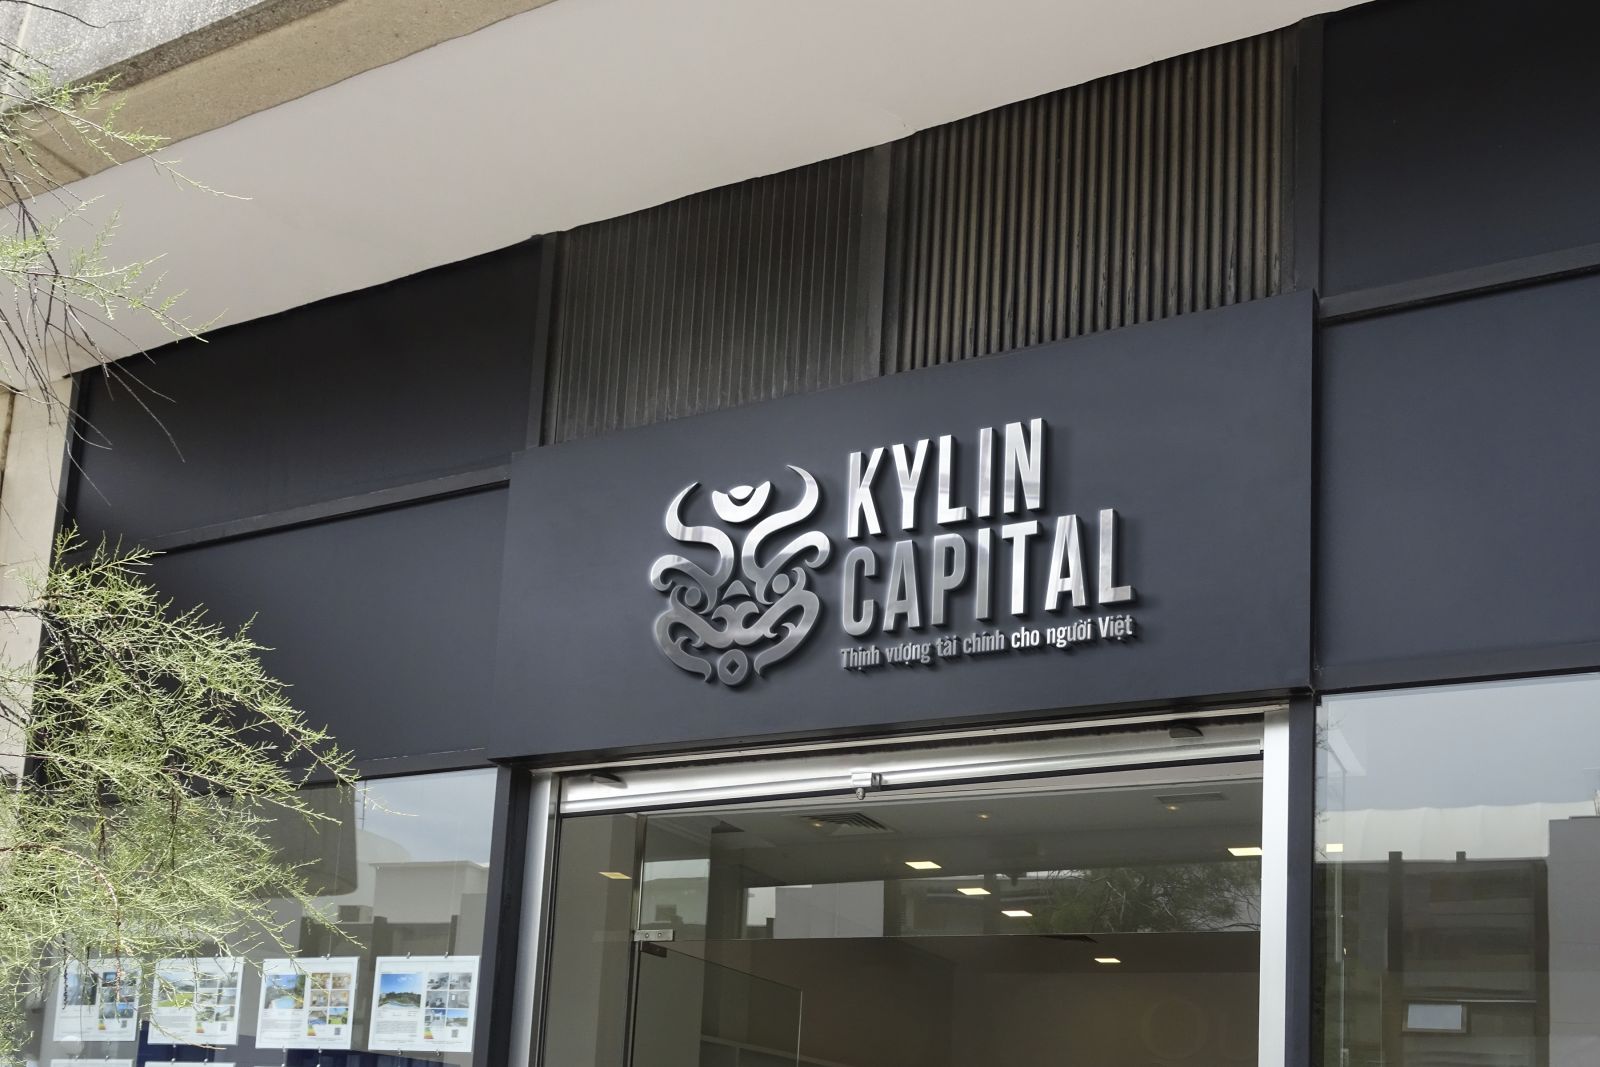 Kylin Capital - Nâng cao năng lực quản lý tài chính cho nhân sự